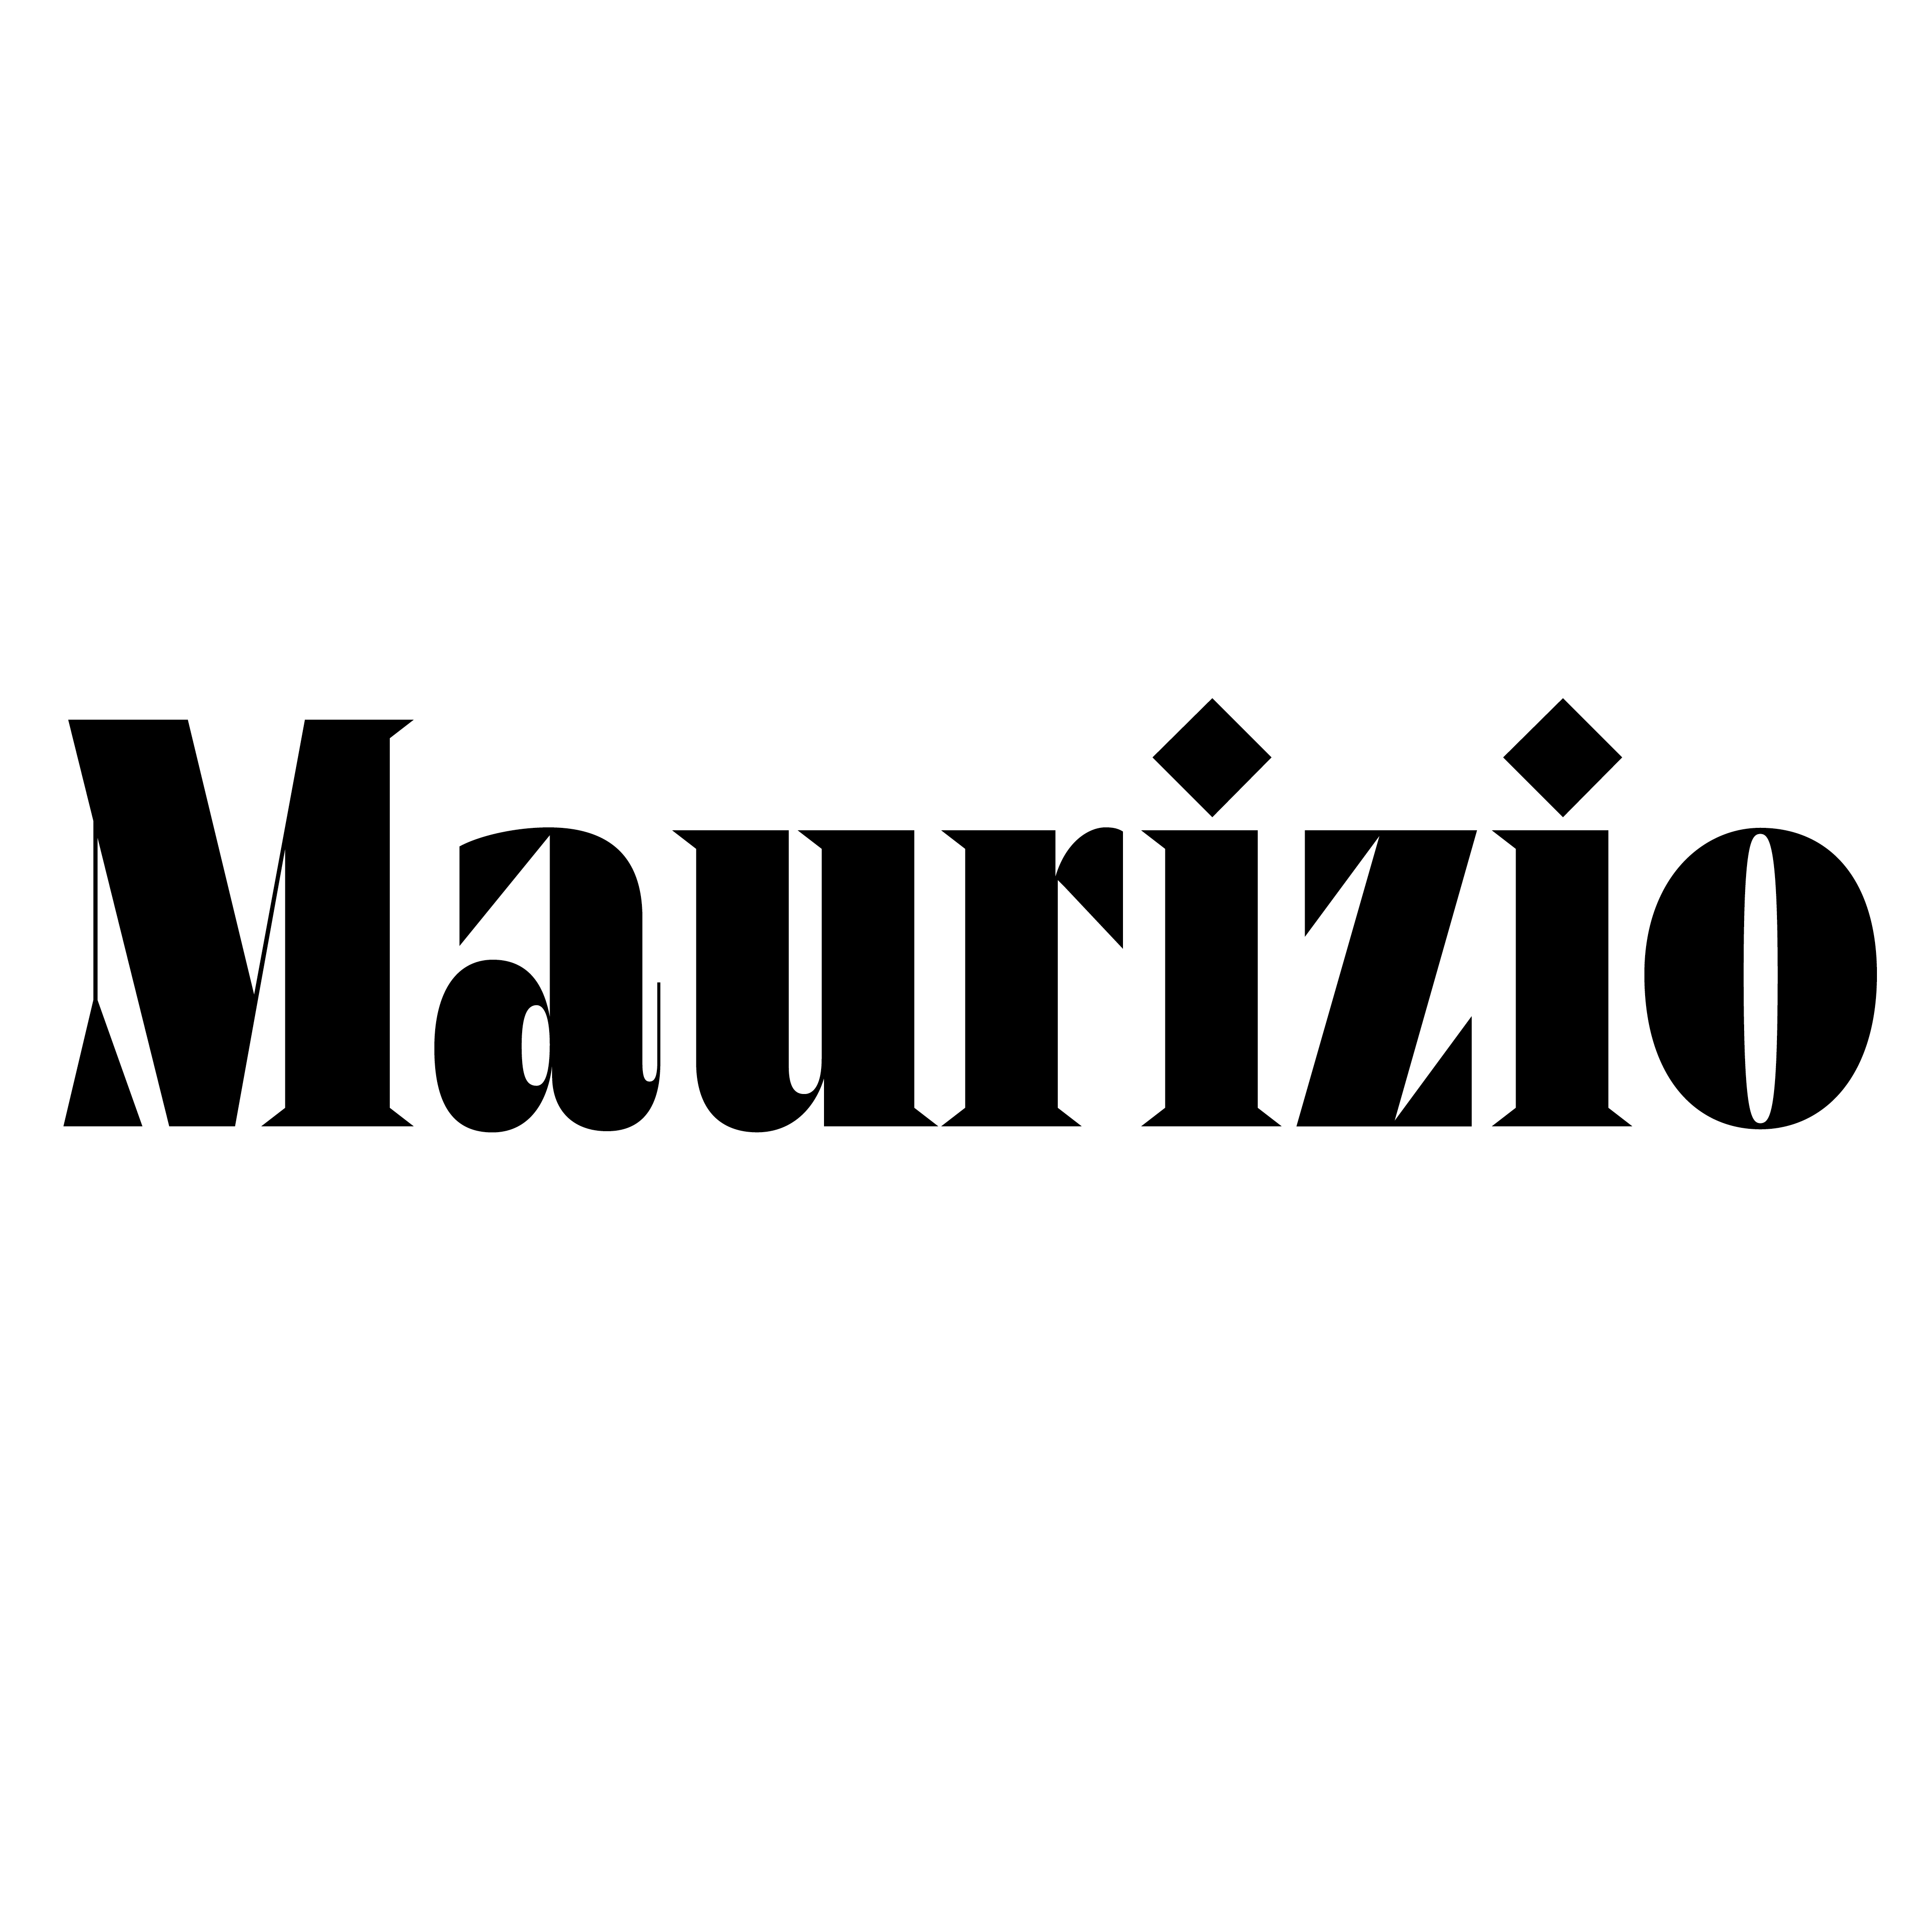 Maurizio_Square_1